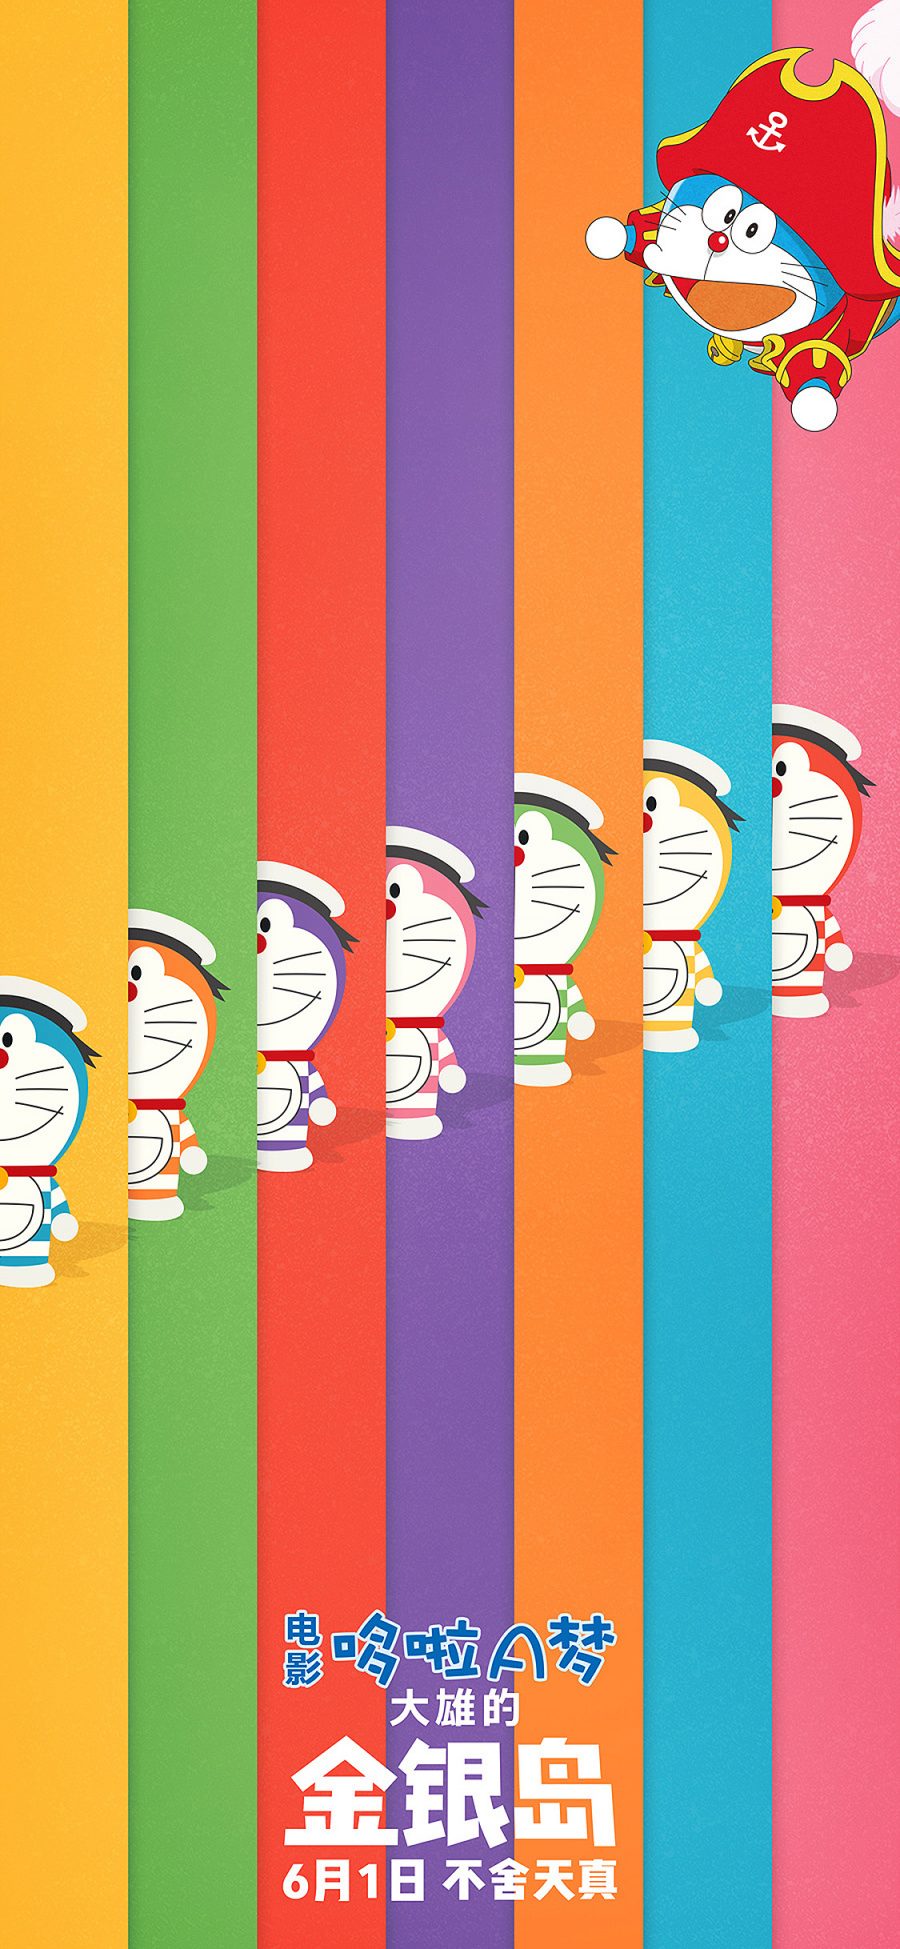 [2436×1125]哆啦A梦 大雄的金银岛 带我回家 动画片 卡通 电影 海报 叮当猫 色彩 苹果手机动漫壁纸图片